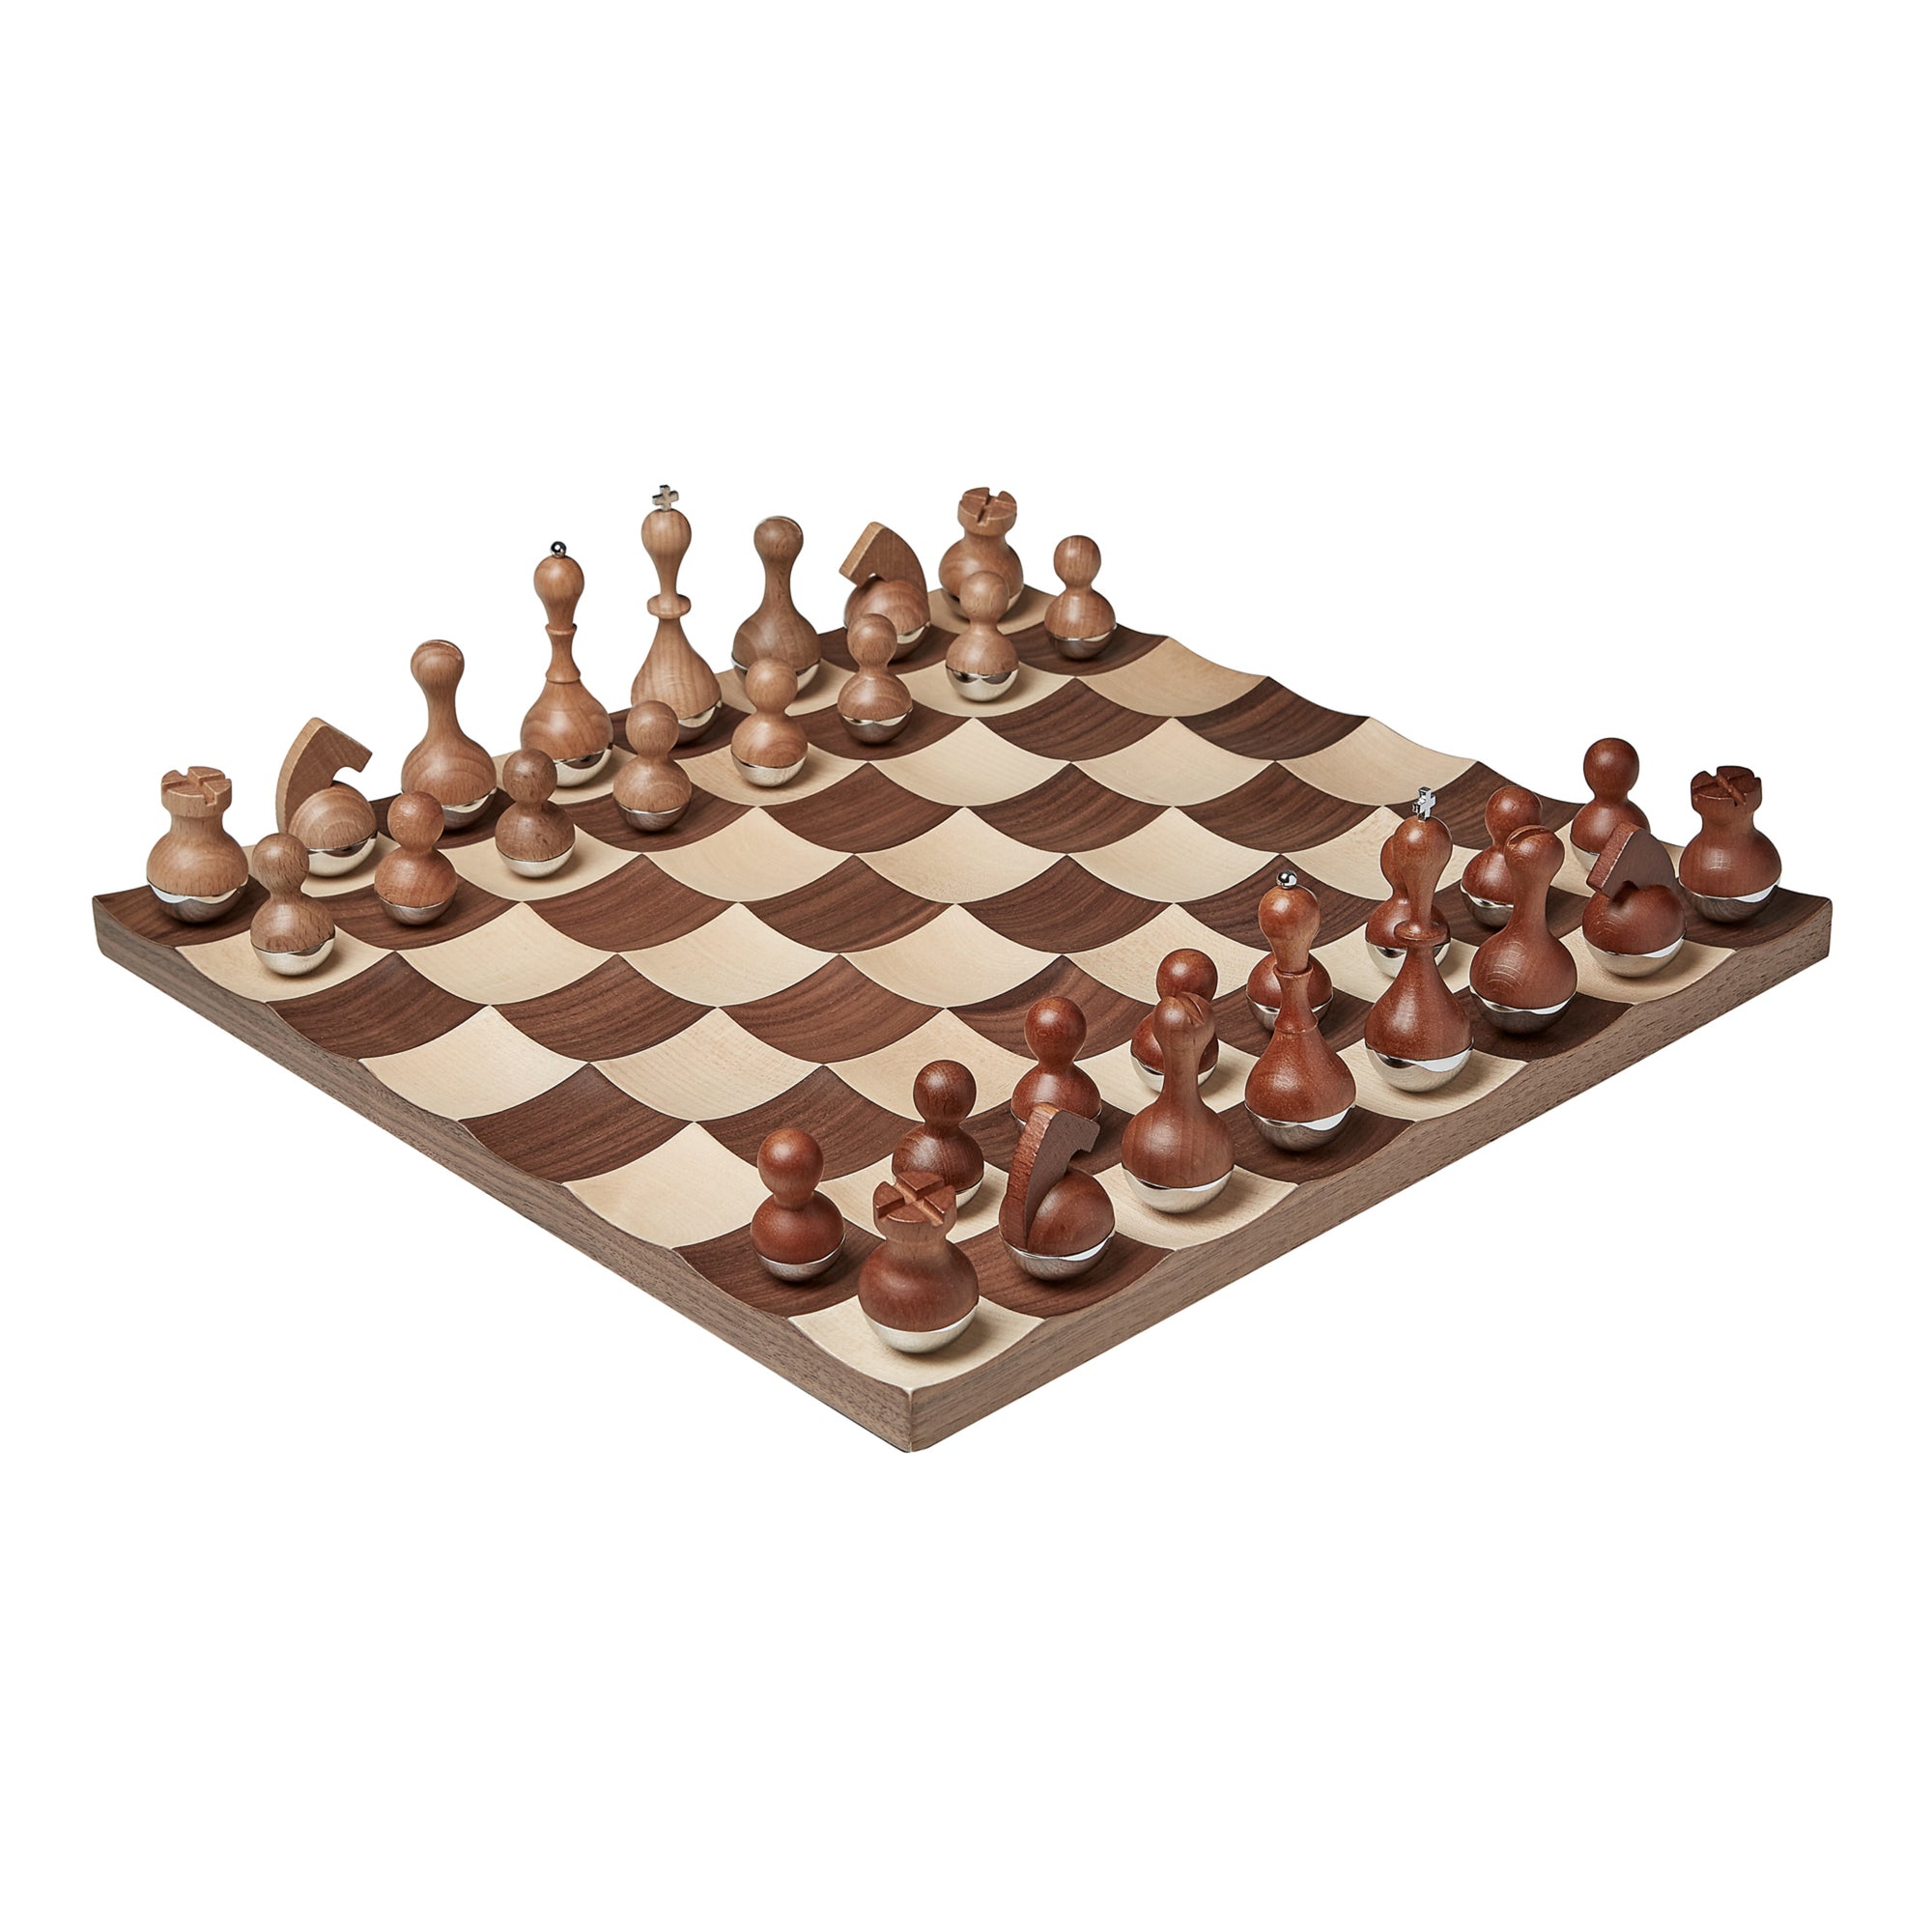 新しく着き Animal Kingdom Chessmen from Italy Greenwich Chess Board 